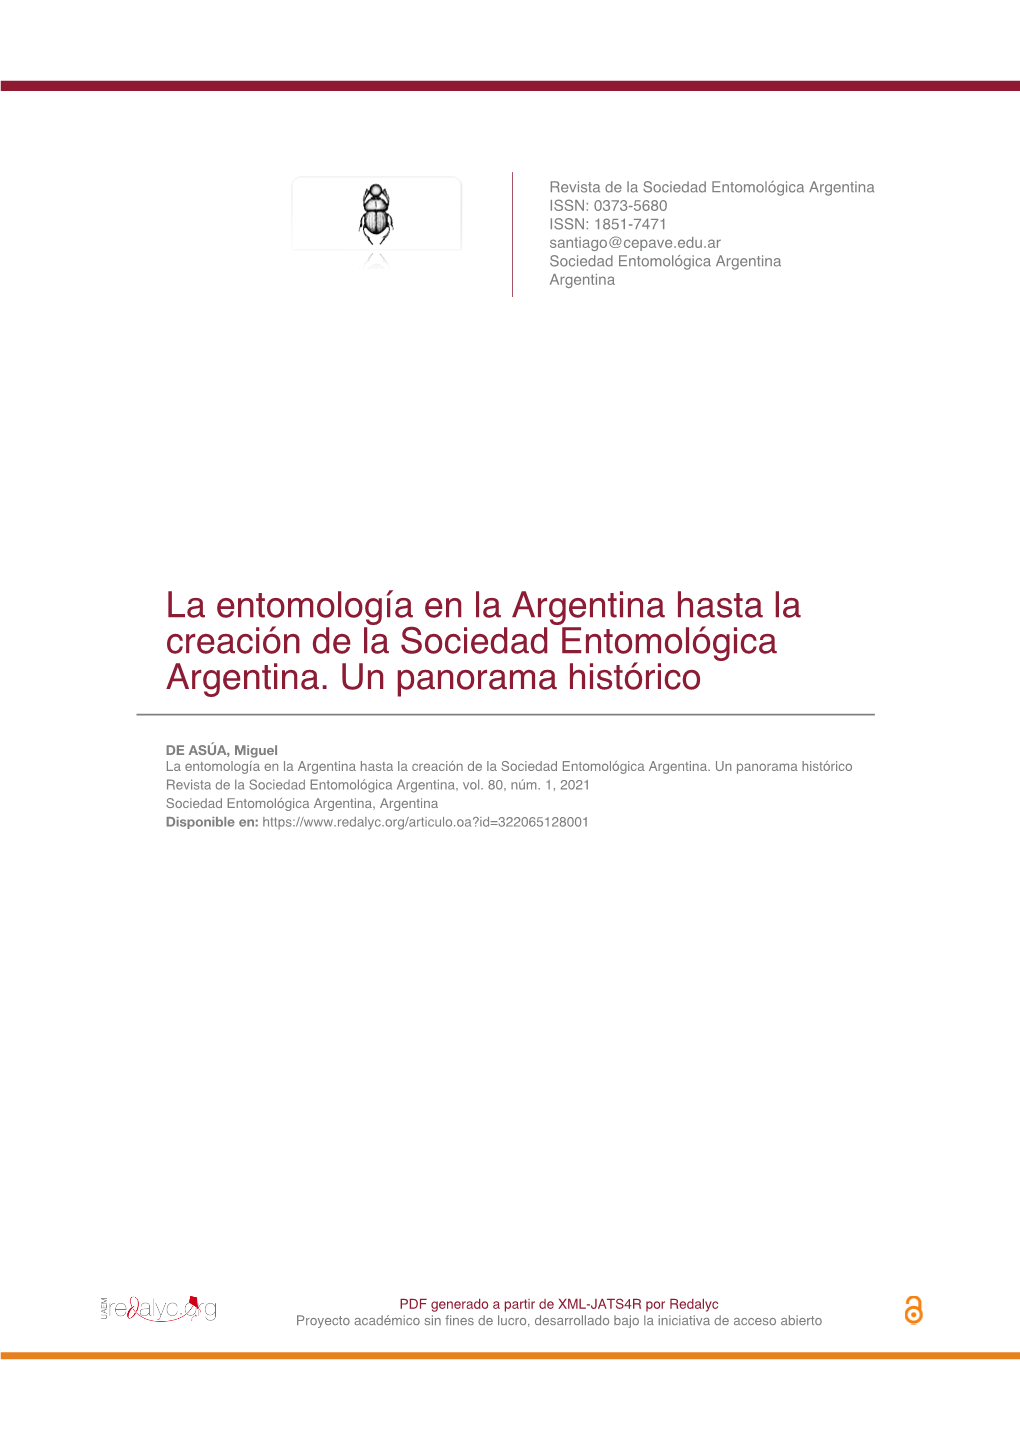 La Entomología En La Argentina Hasta La Creación De La Sociedad Entomológica Argentina